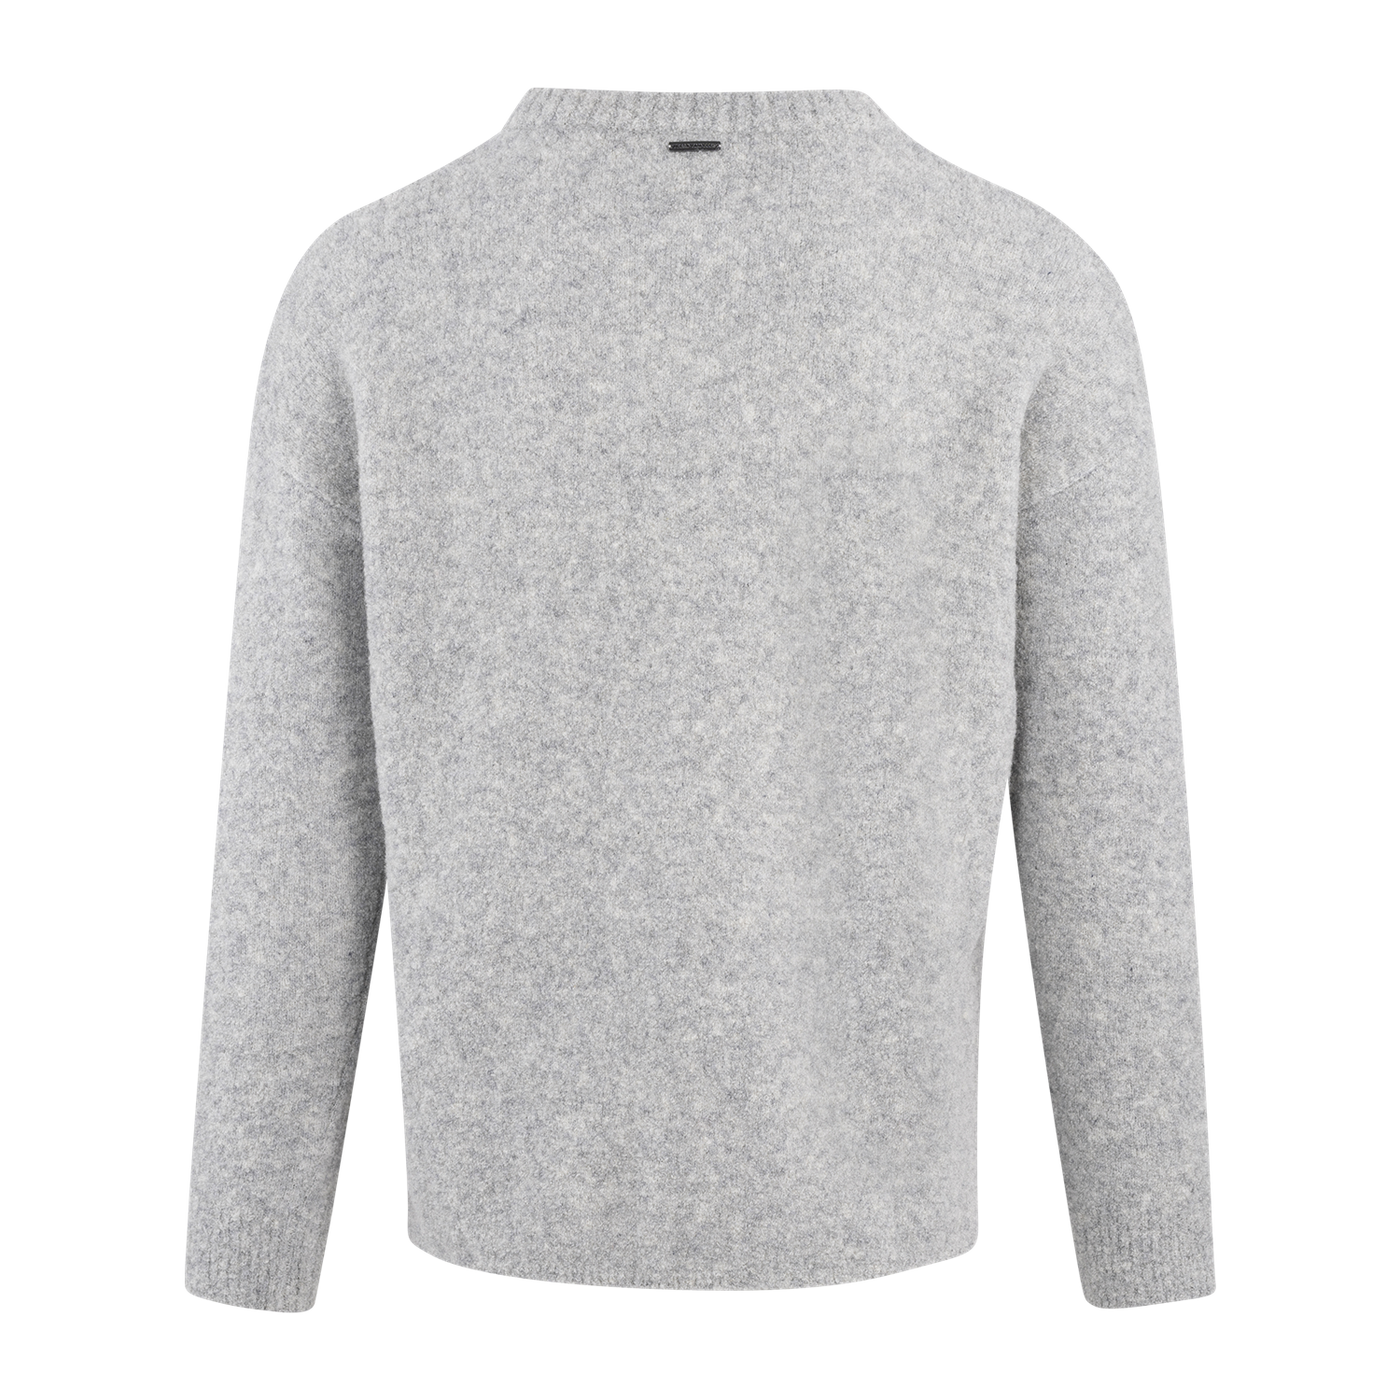 Perot sweater